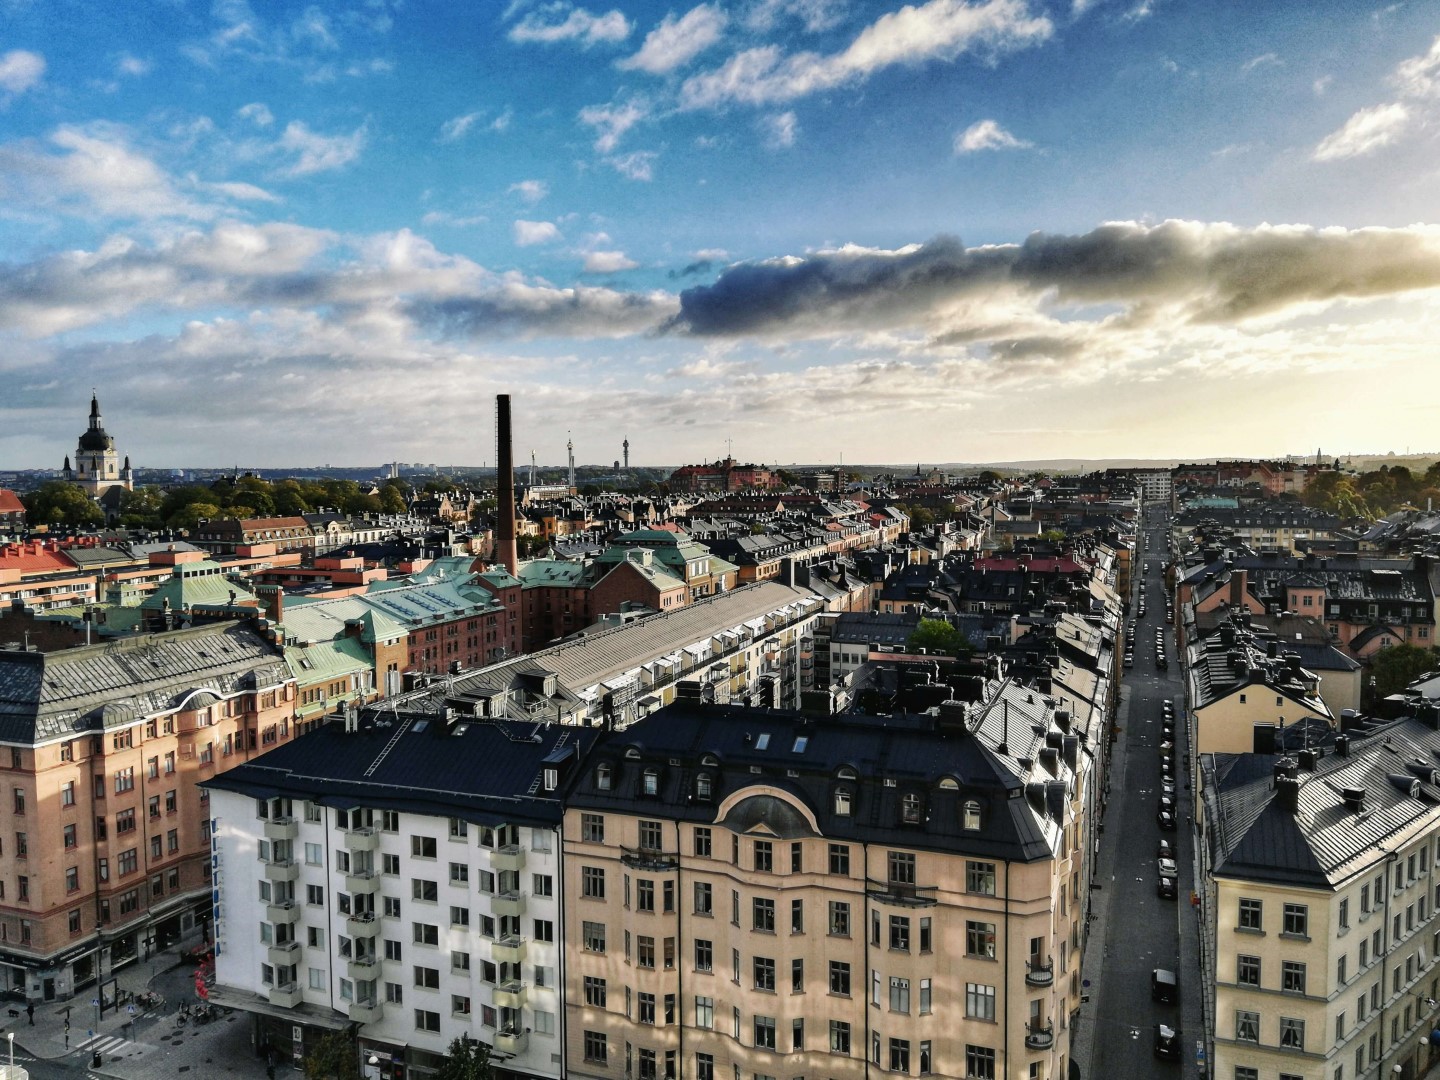 Kontor och hyresgastmarknaden Stockholm